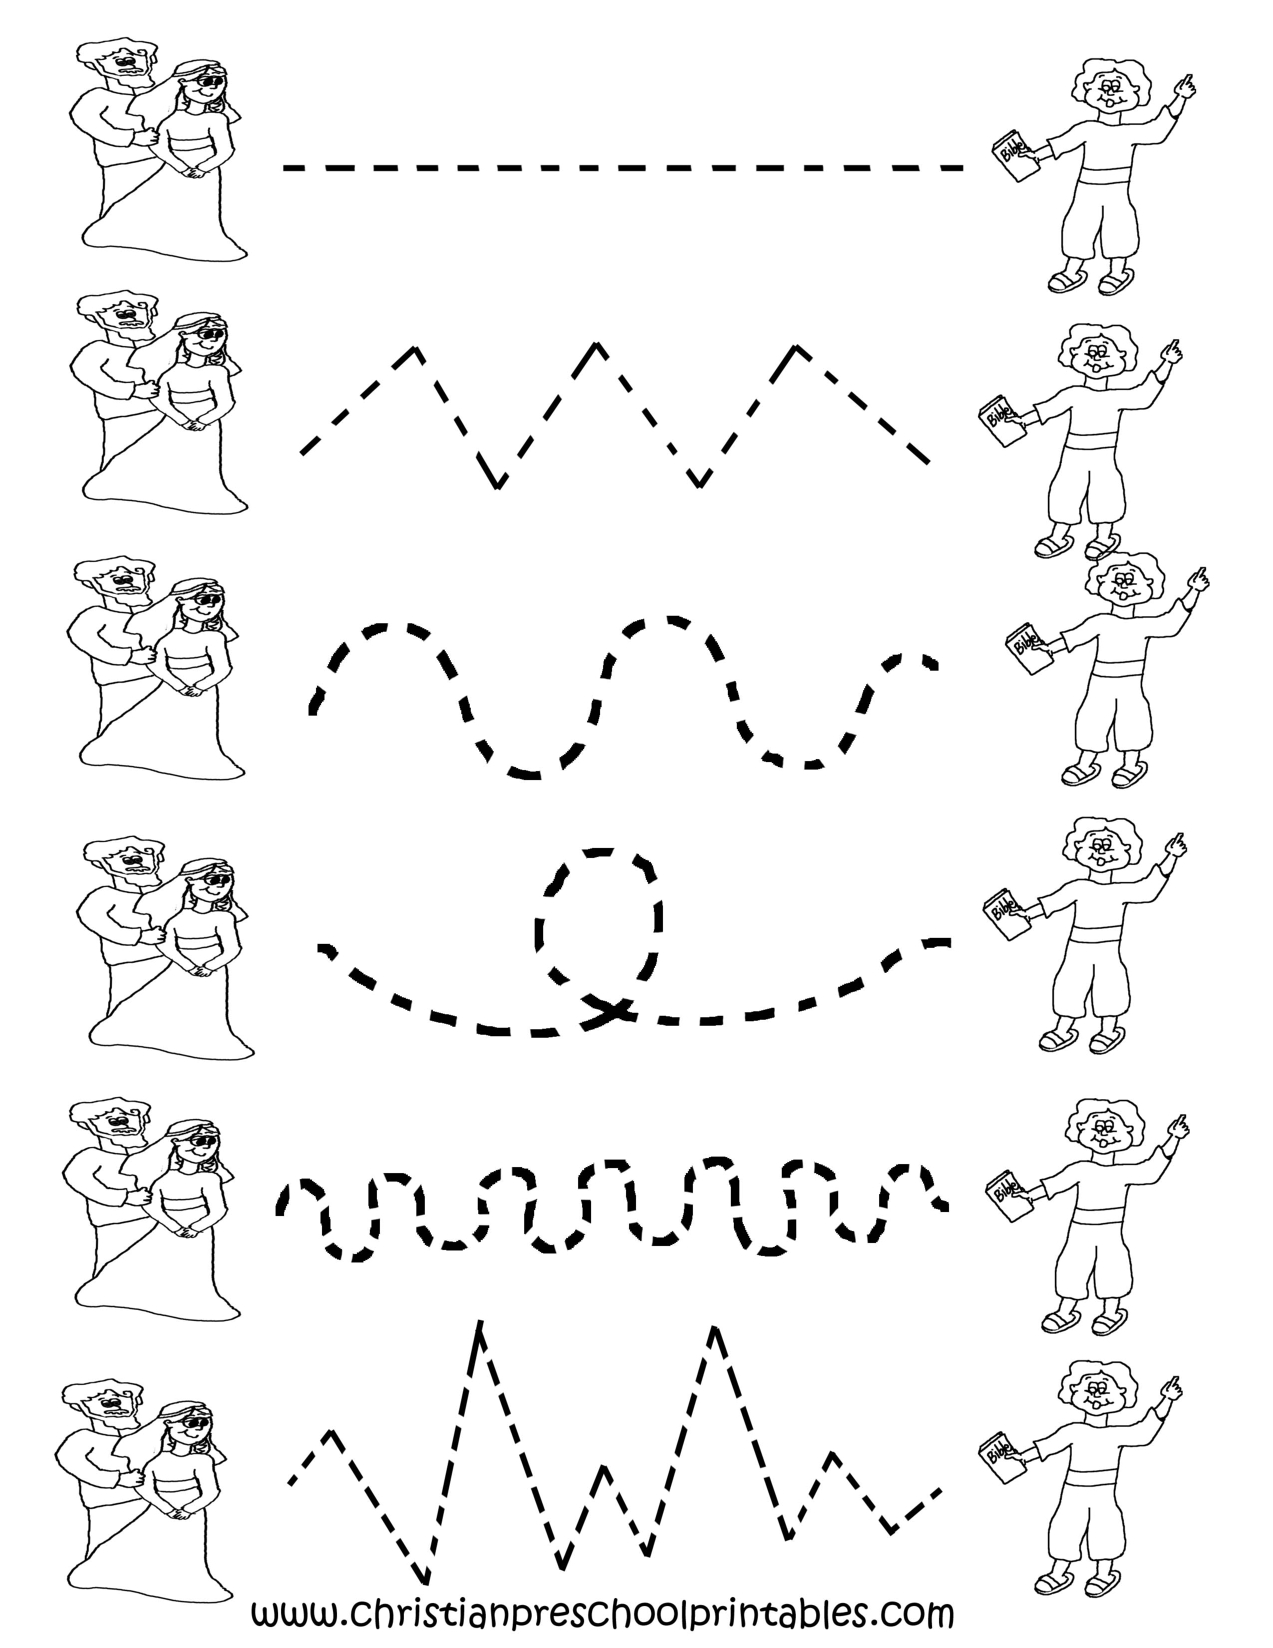 Free Printable Preschool Worksheets Tracing Lines - Free Printable